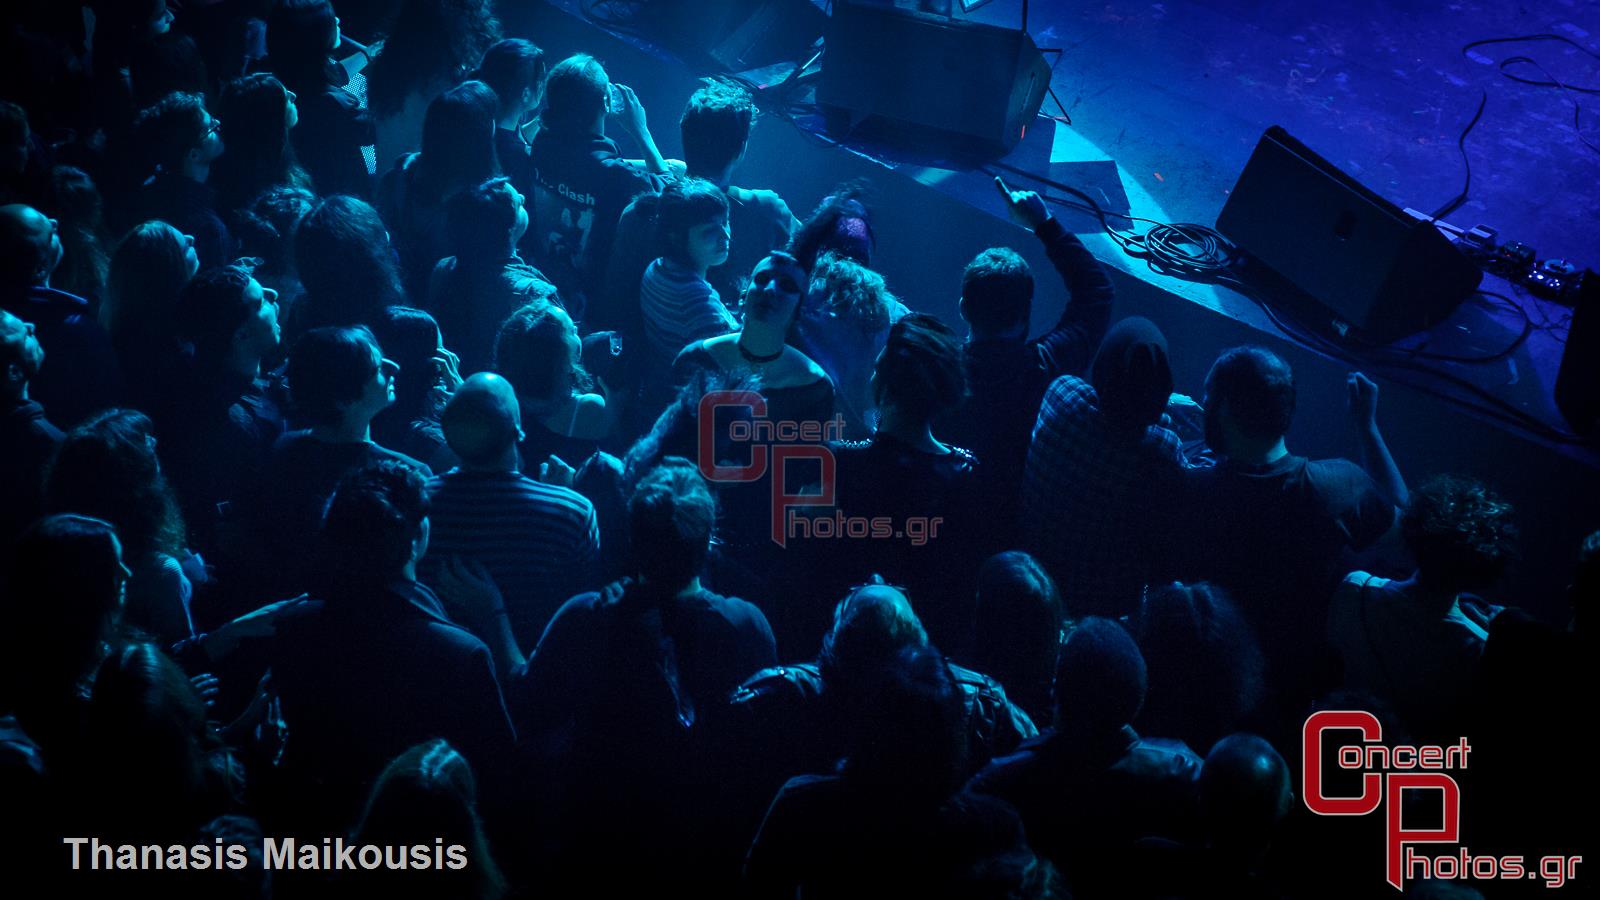 Peter Hook & The Light-Peter Hook & The Light photographer: Thanasis Maikousis - ConcertPhotos-0940